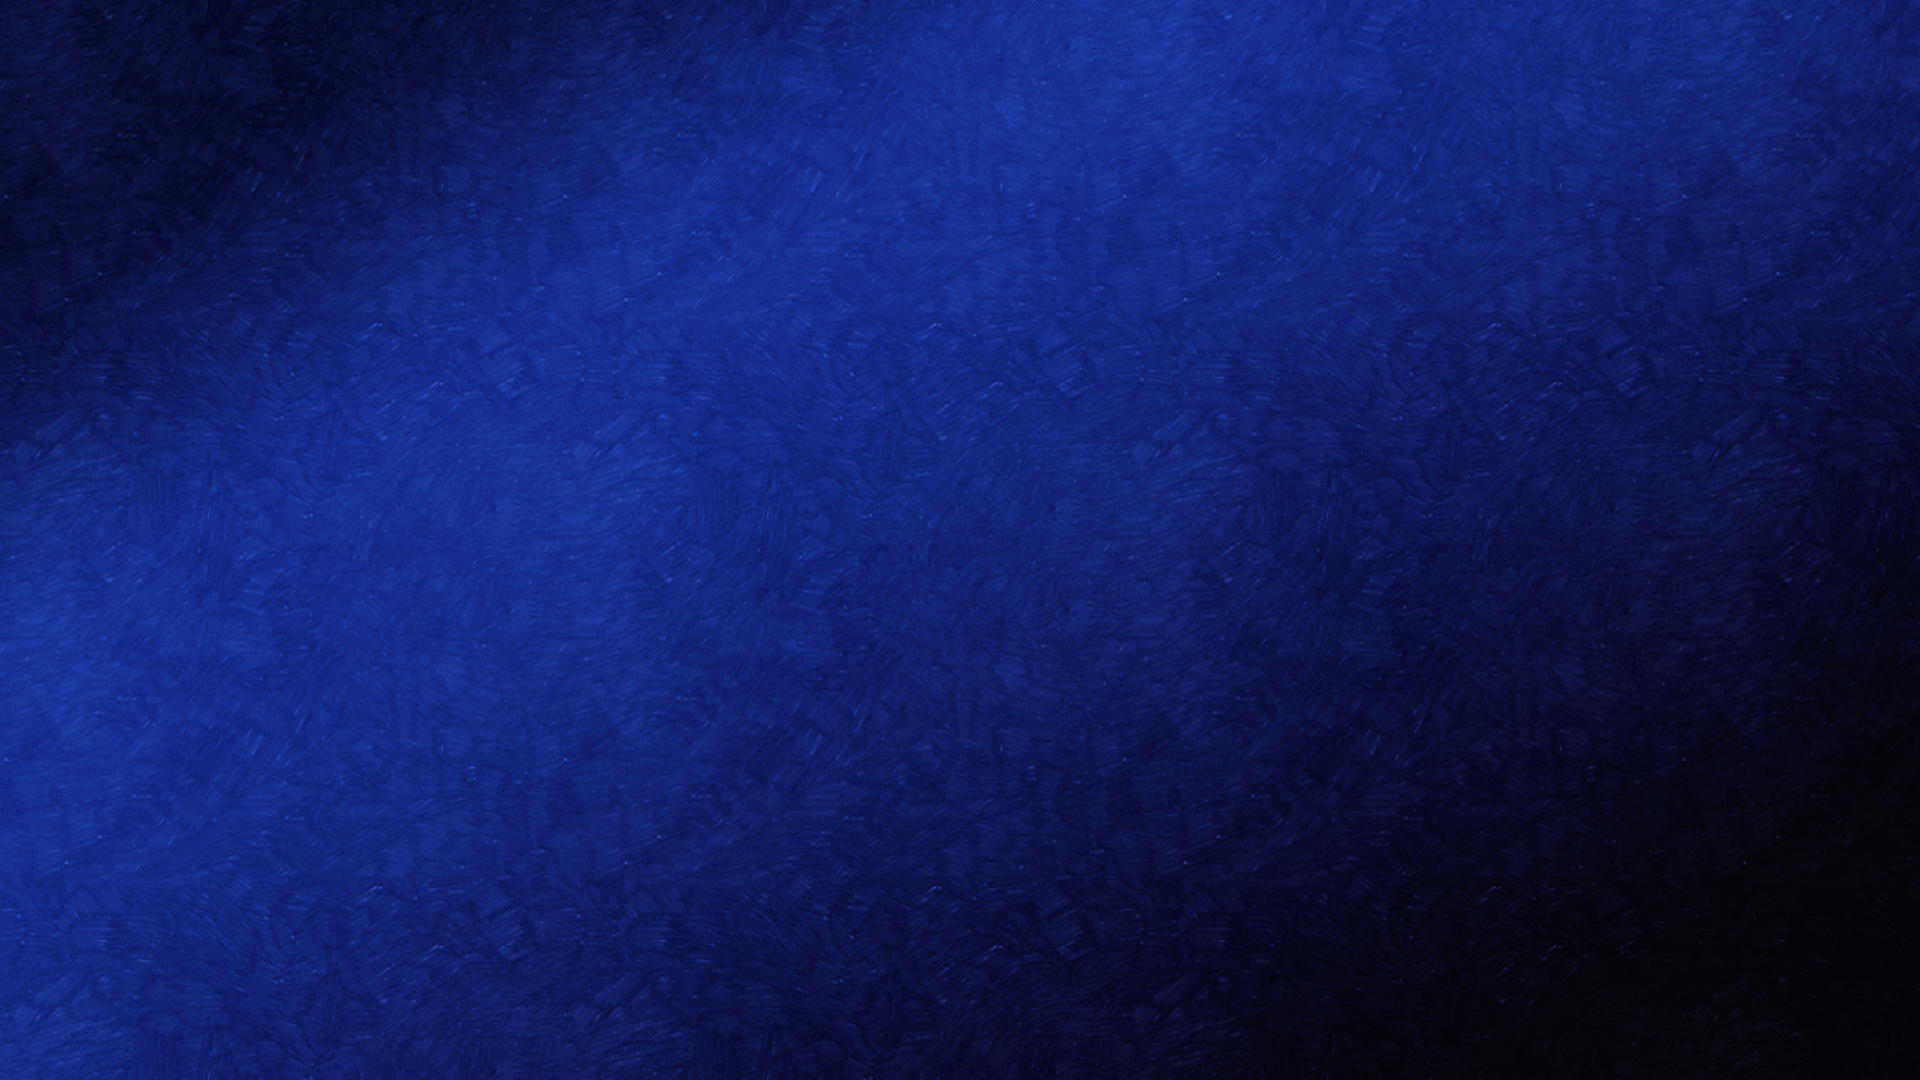 General 1920x1080 blue pattern dark black simple background gradient minimalism blue background